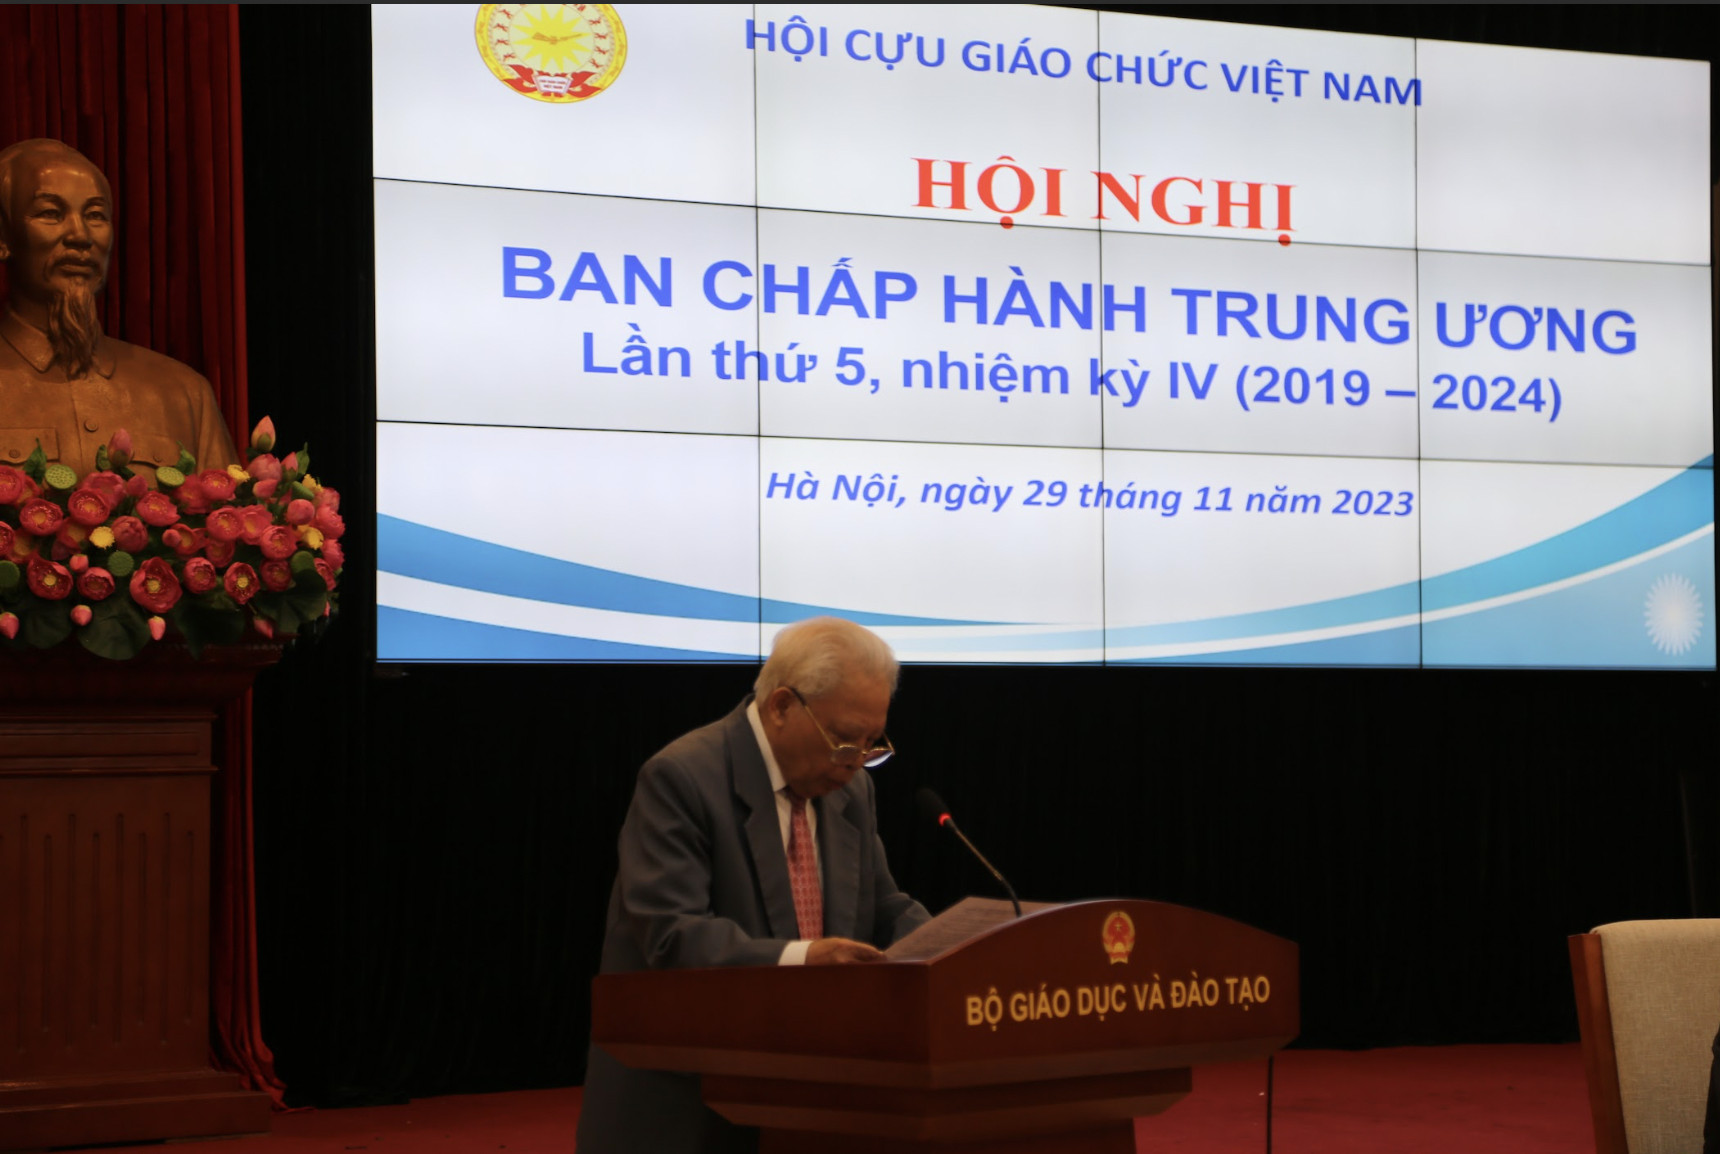 Hội nghị Ban chấp hành trung ương Hội Cựu giáo chức Việt Nam lần thứ 5 nhiệm kỳ (2019-2024)